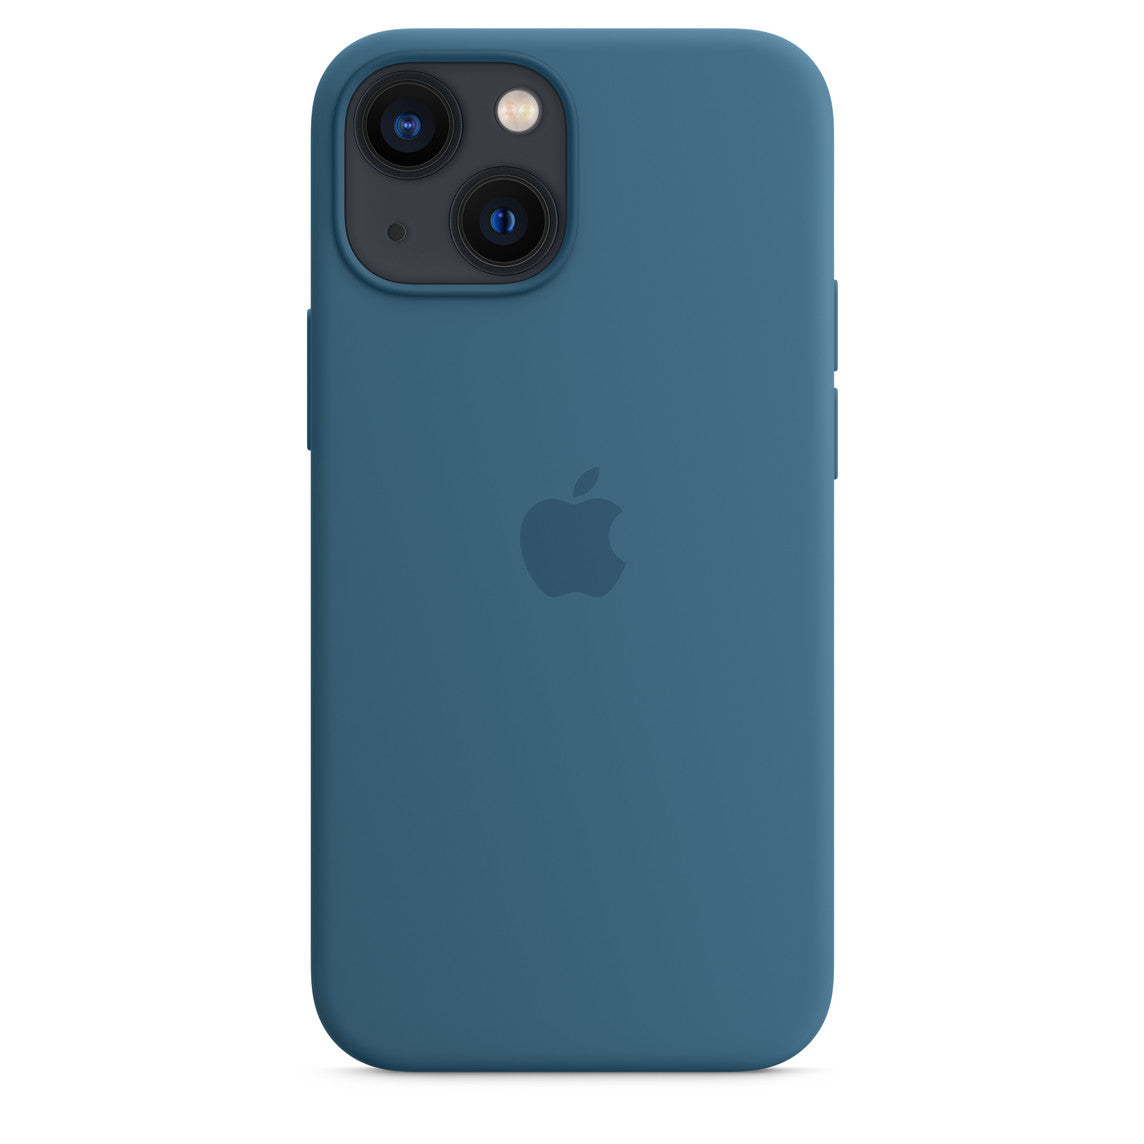 iPhone 13 Pro 256GB Sierrablau mit Apple iPhone 13 Pro Silikon Case mit Magsafe - Eisblau